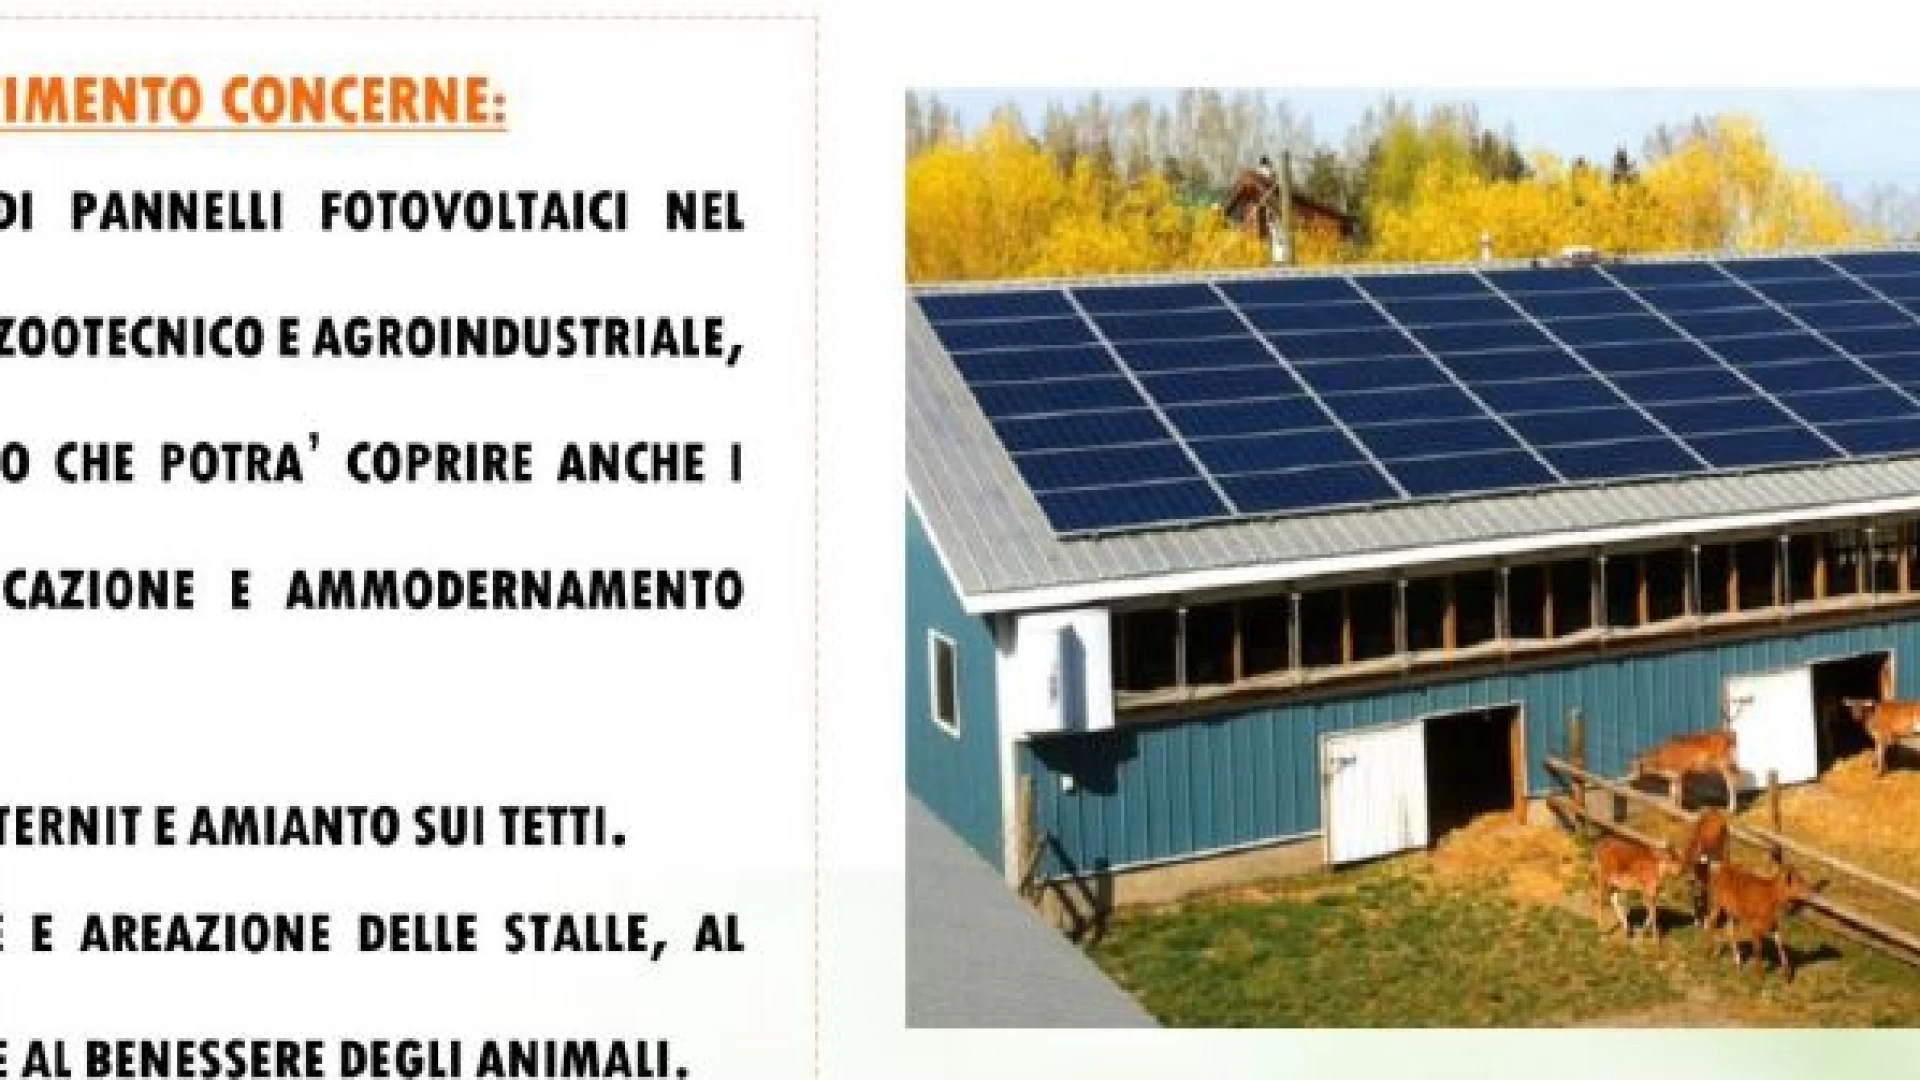 Incentivi per aziende agricole per l'installazione di impianti fotovoltaici-parco agrisolare. L'informativa di Confcooperative Molise